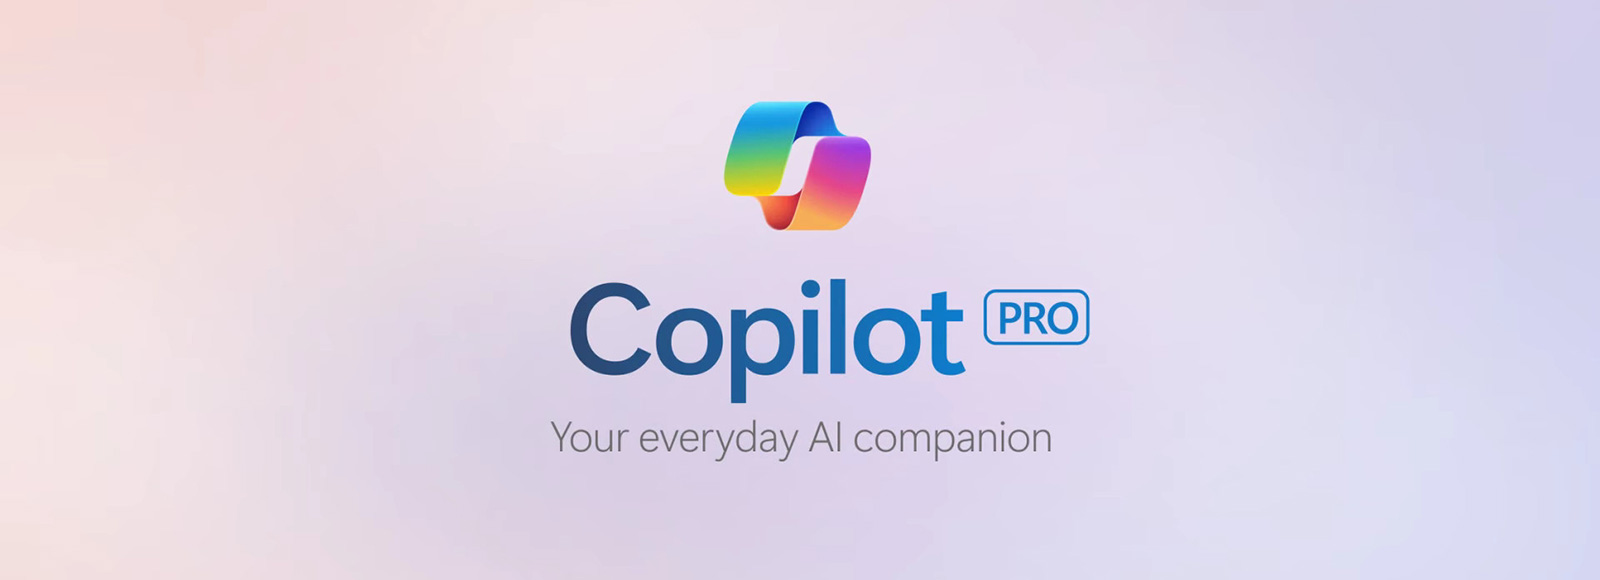 微软推出Copilot Pro服务，每月20美元订阅